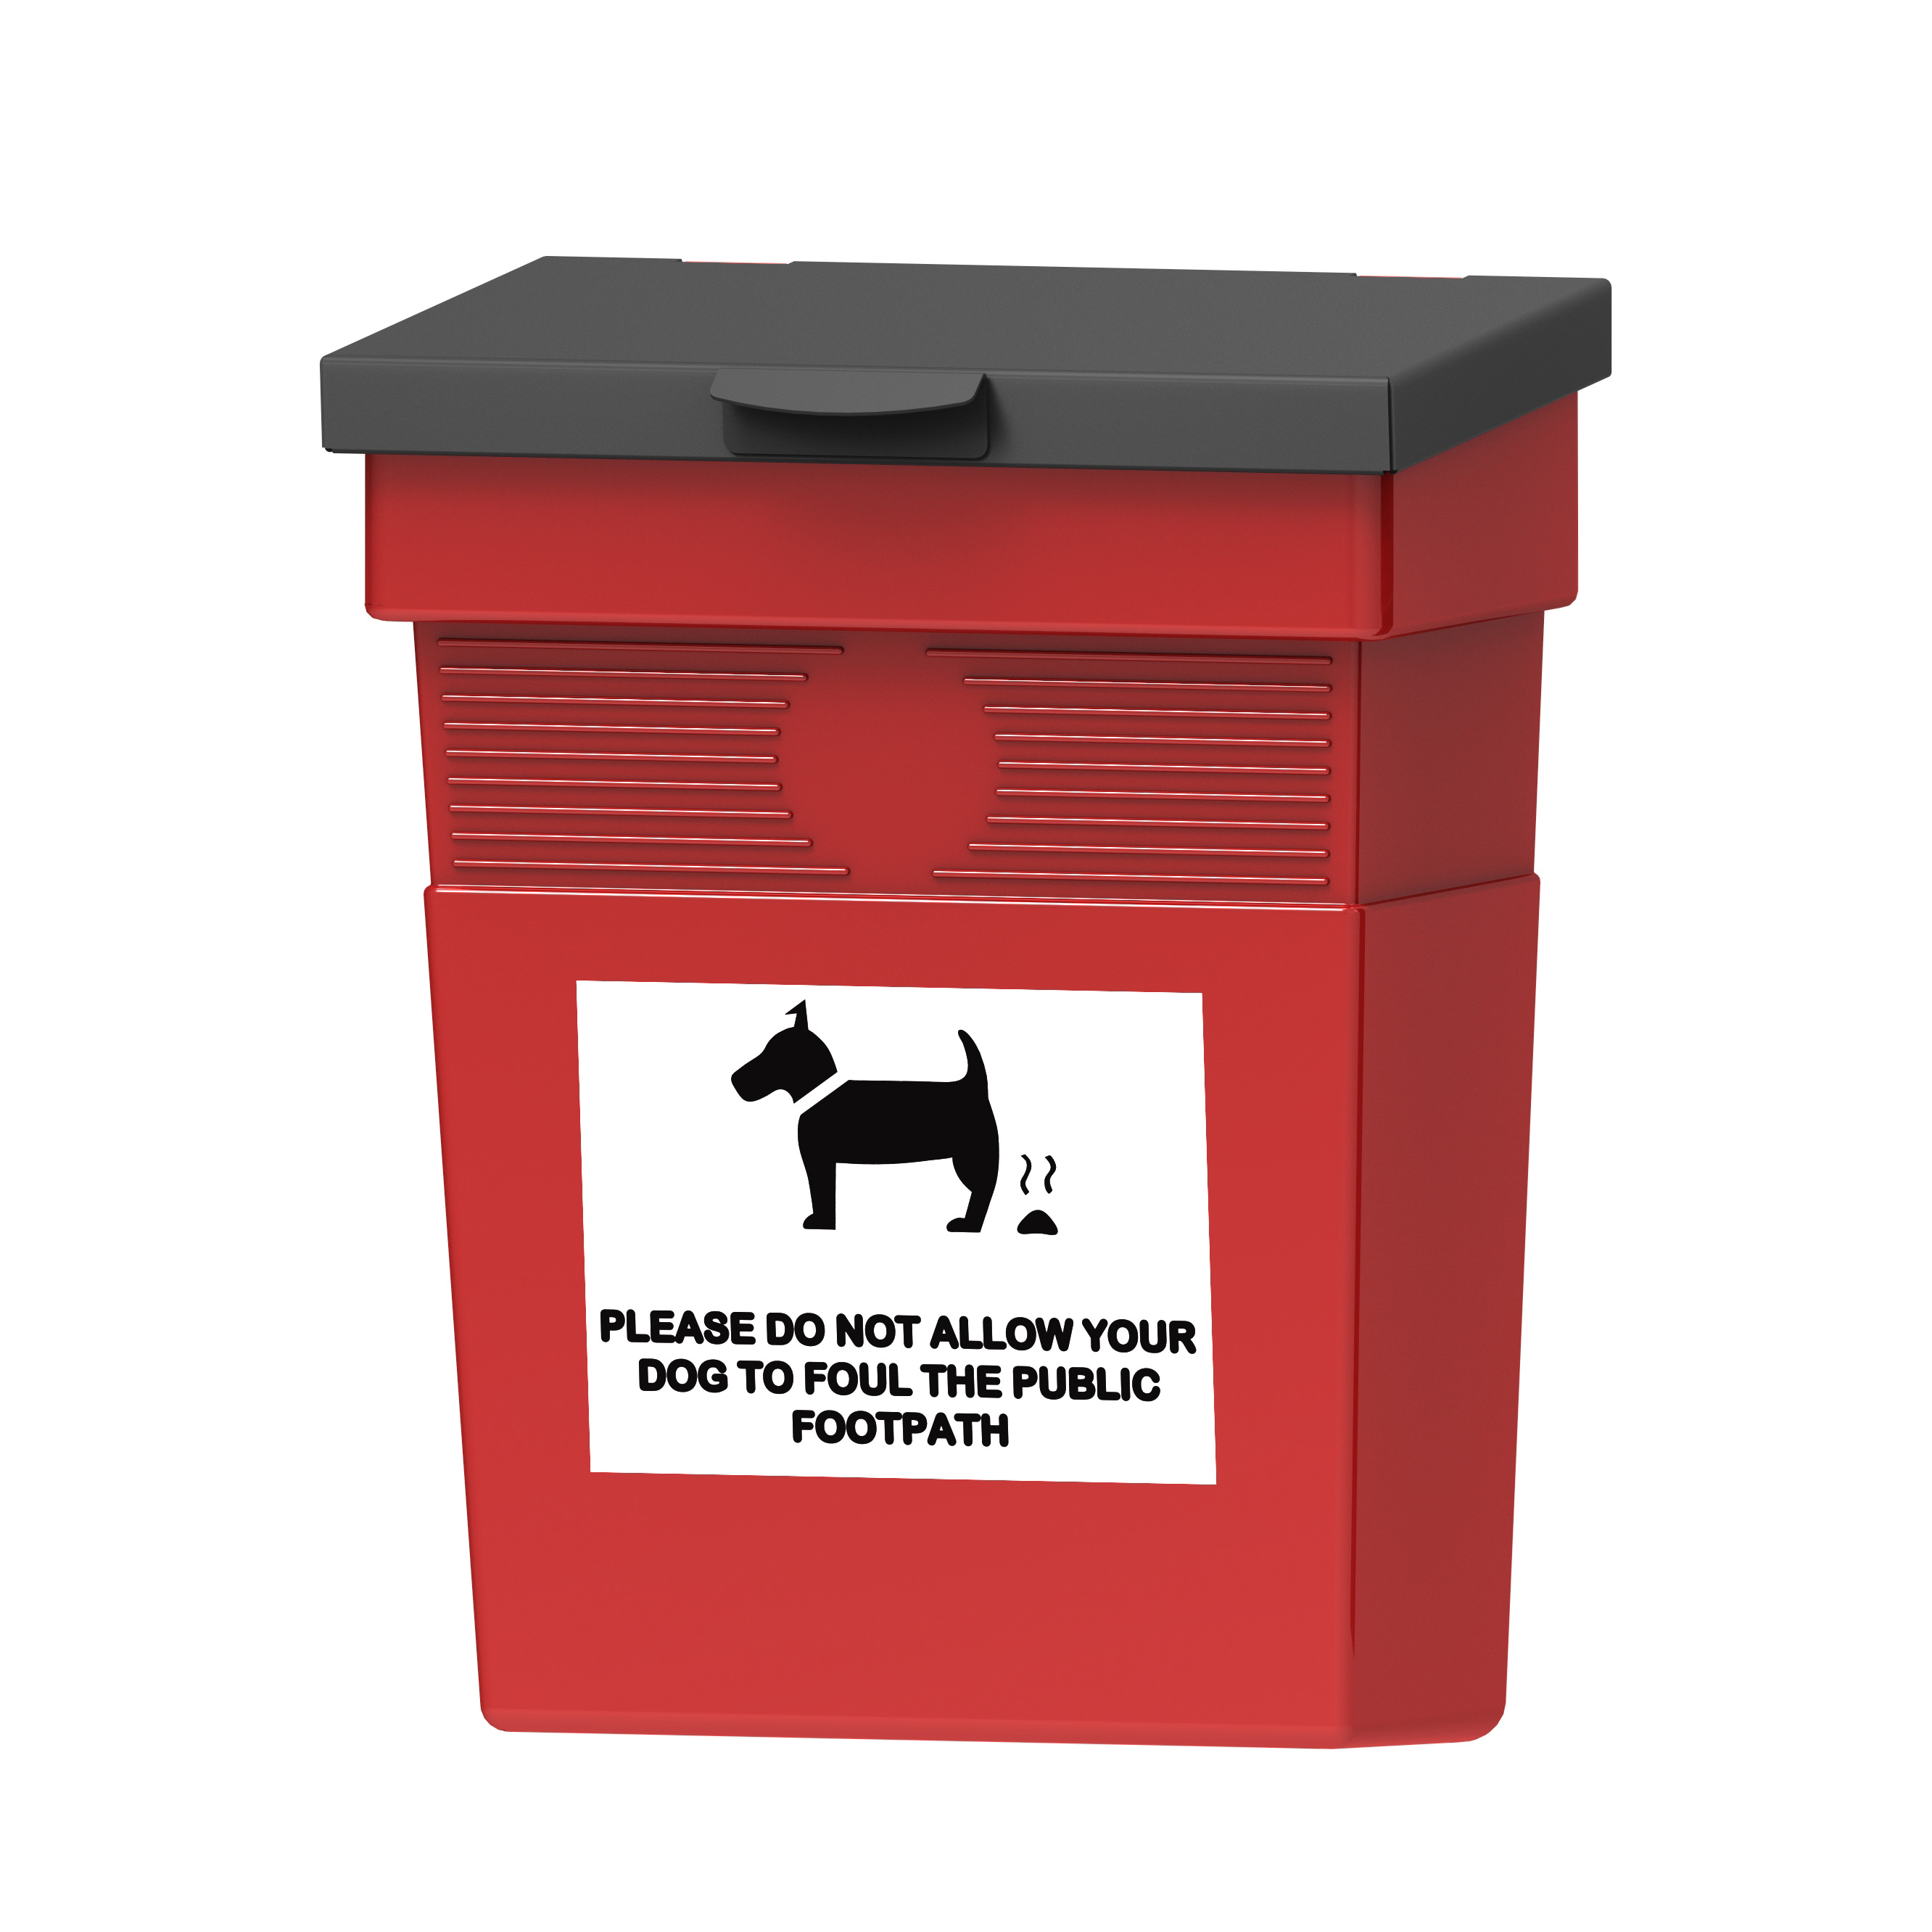 Regent 30 Dog Waste Bin